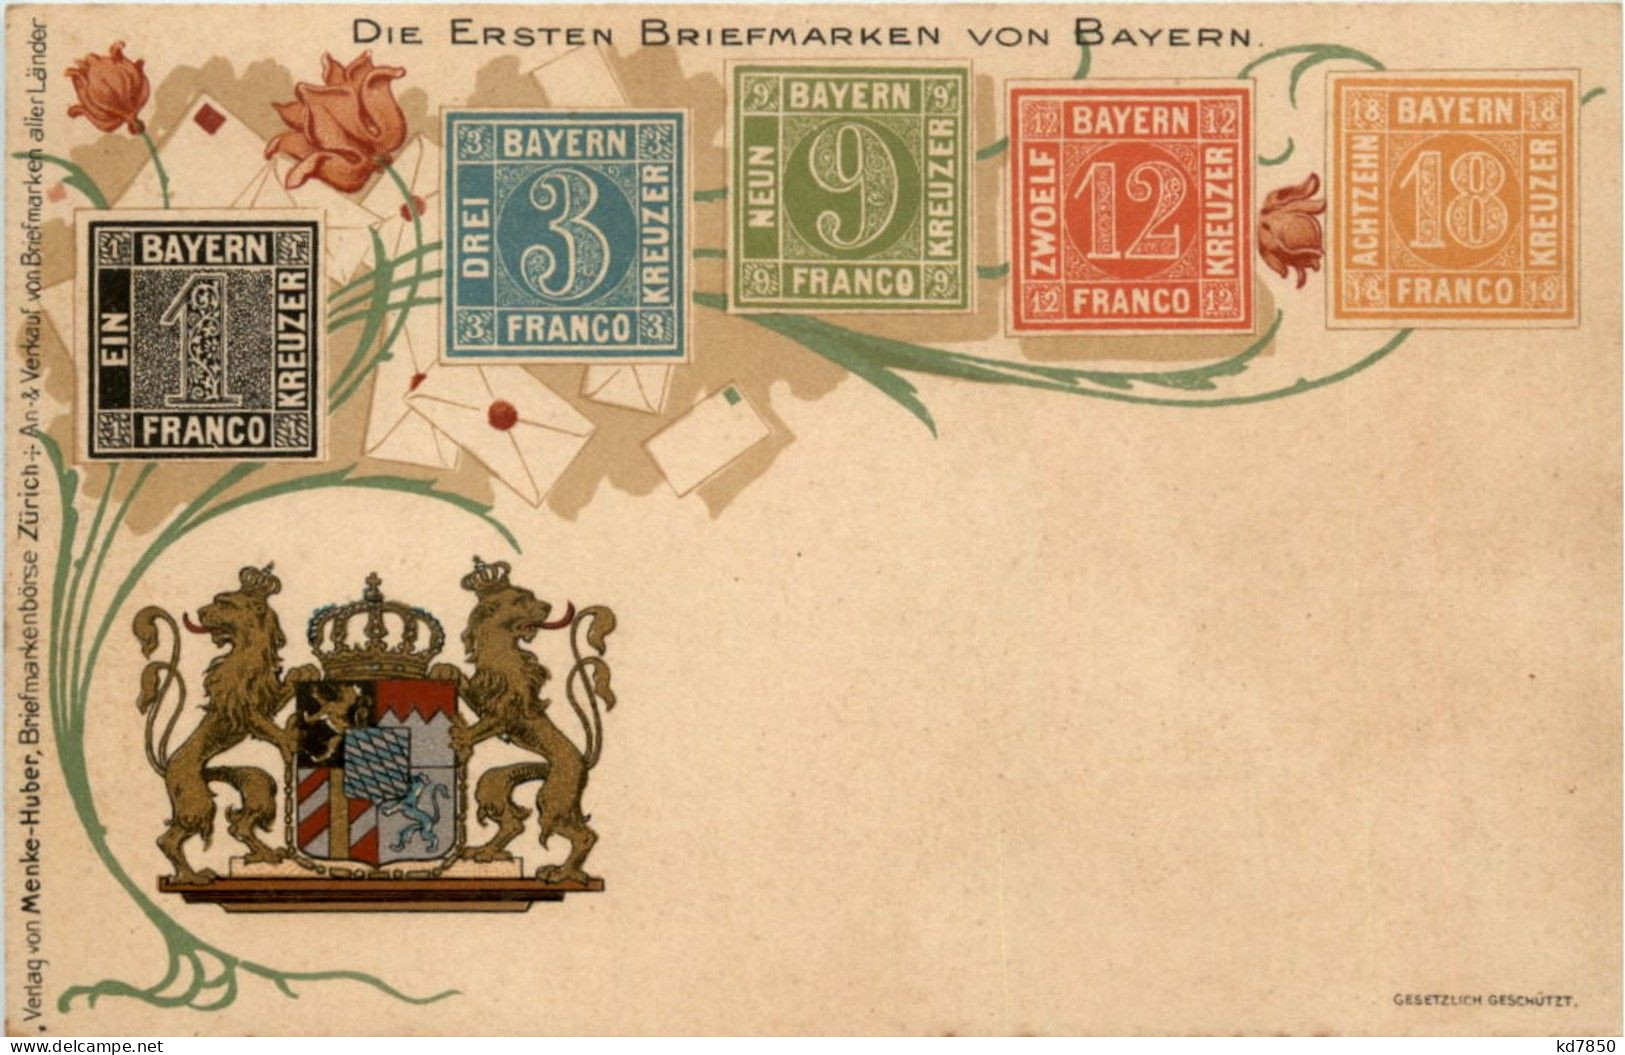 Die Ersten Briefmarken Von Bayern - Litho - Briefmarken (Abbildungen)